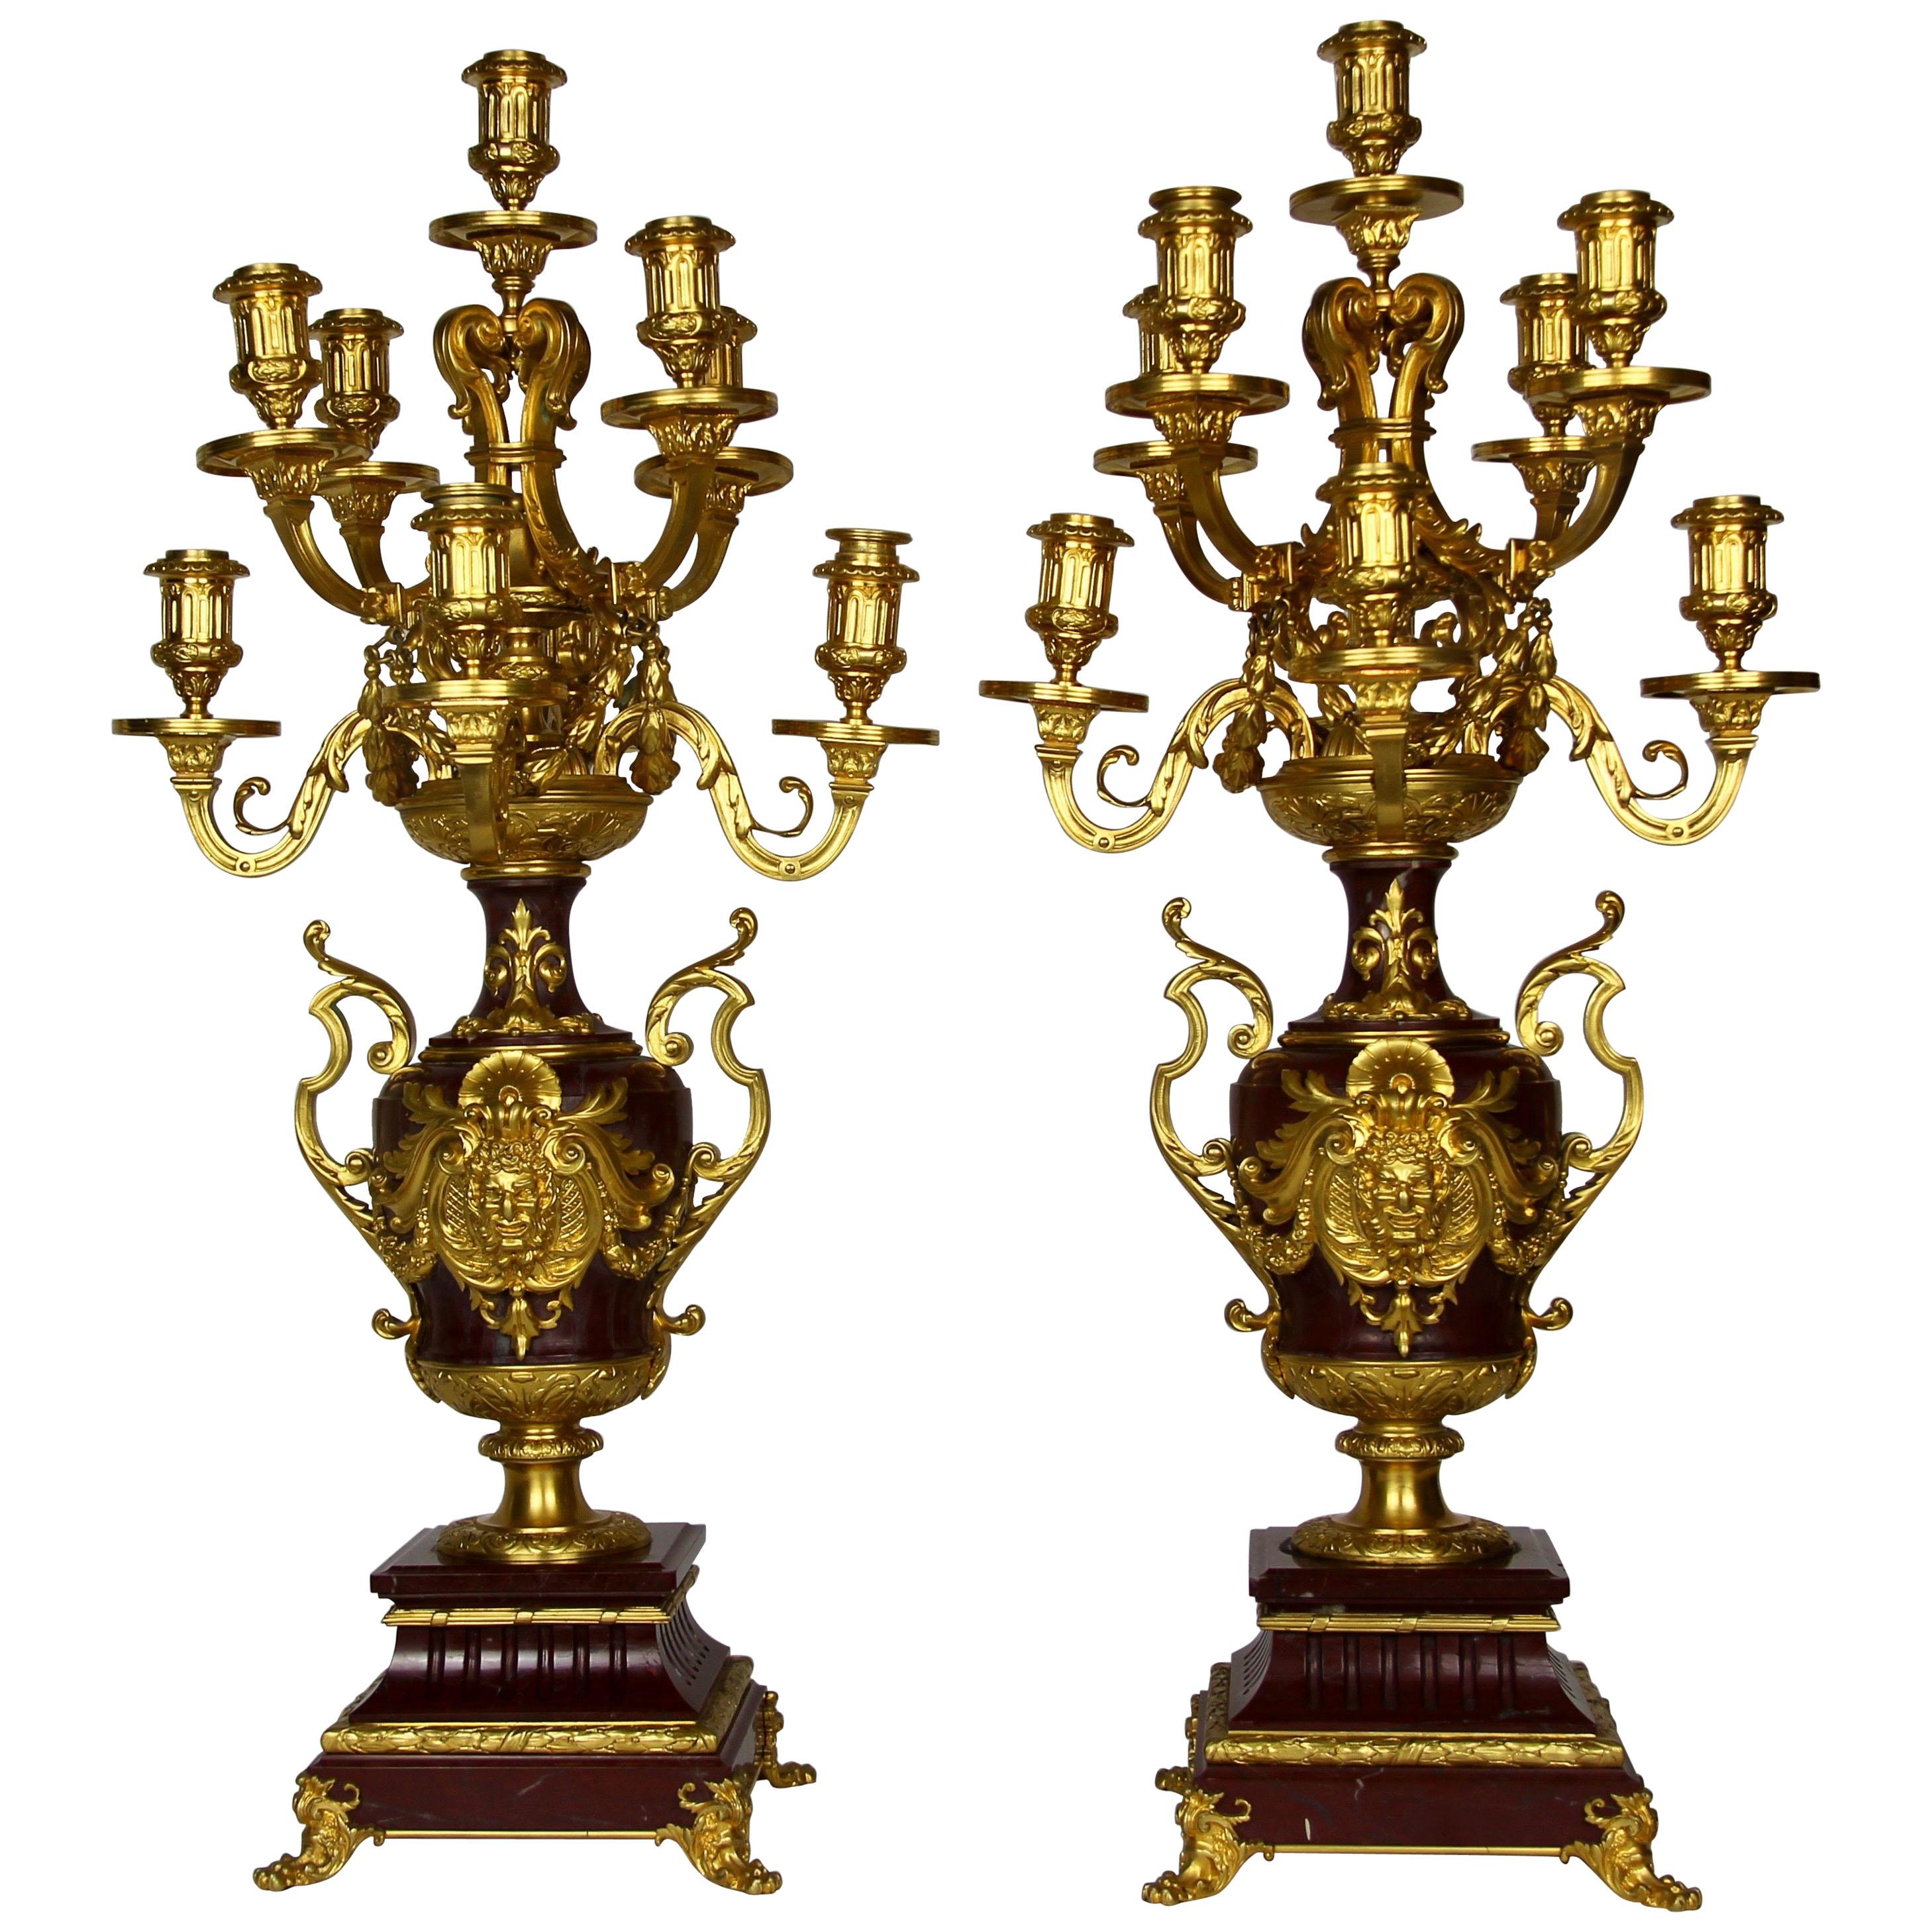 Paire de candélabres à 9 branches en bronze doré et marbre rouge, signés par Barbedienne